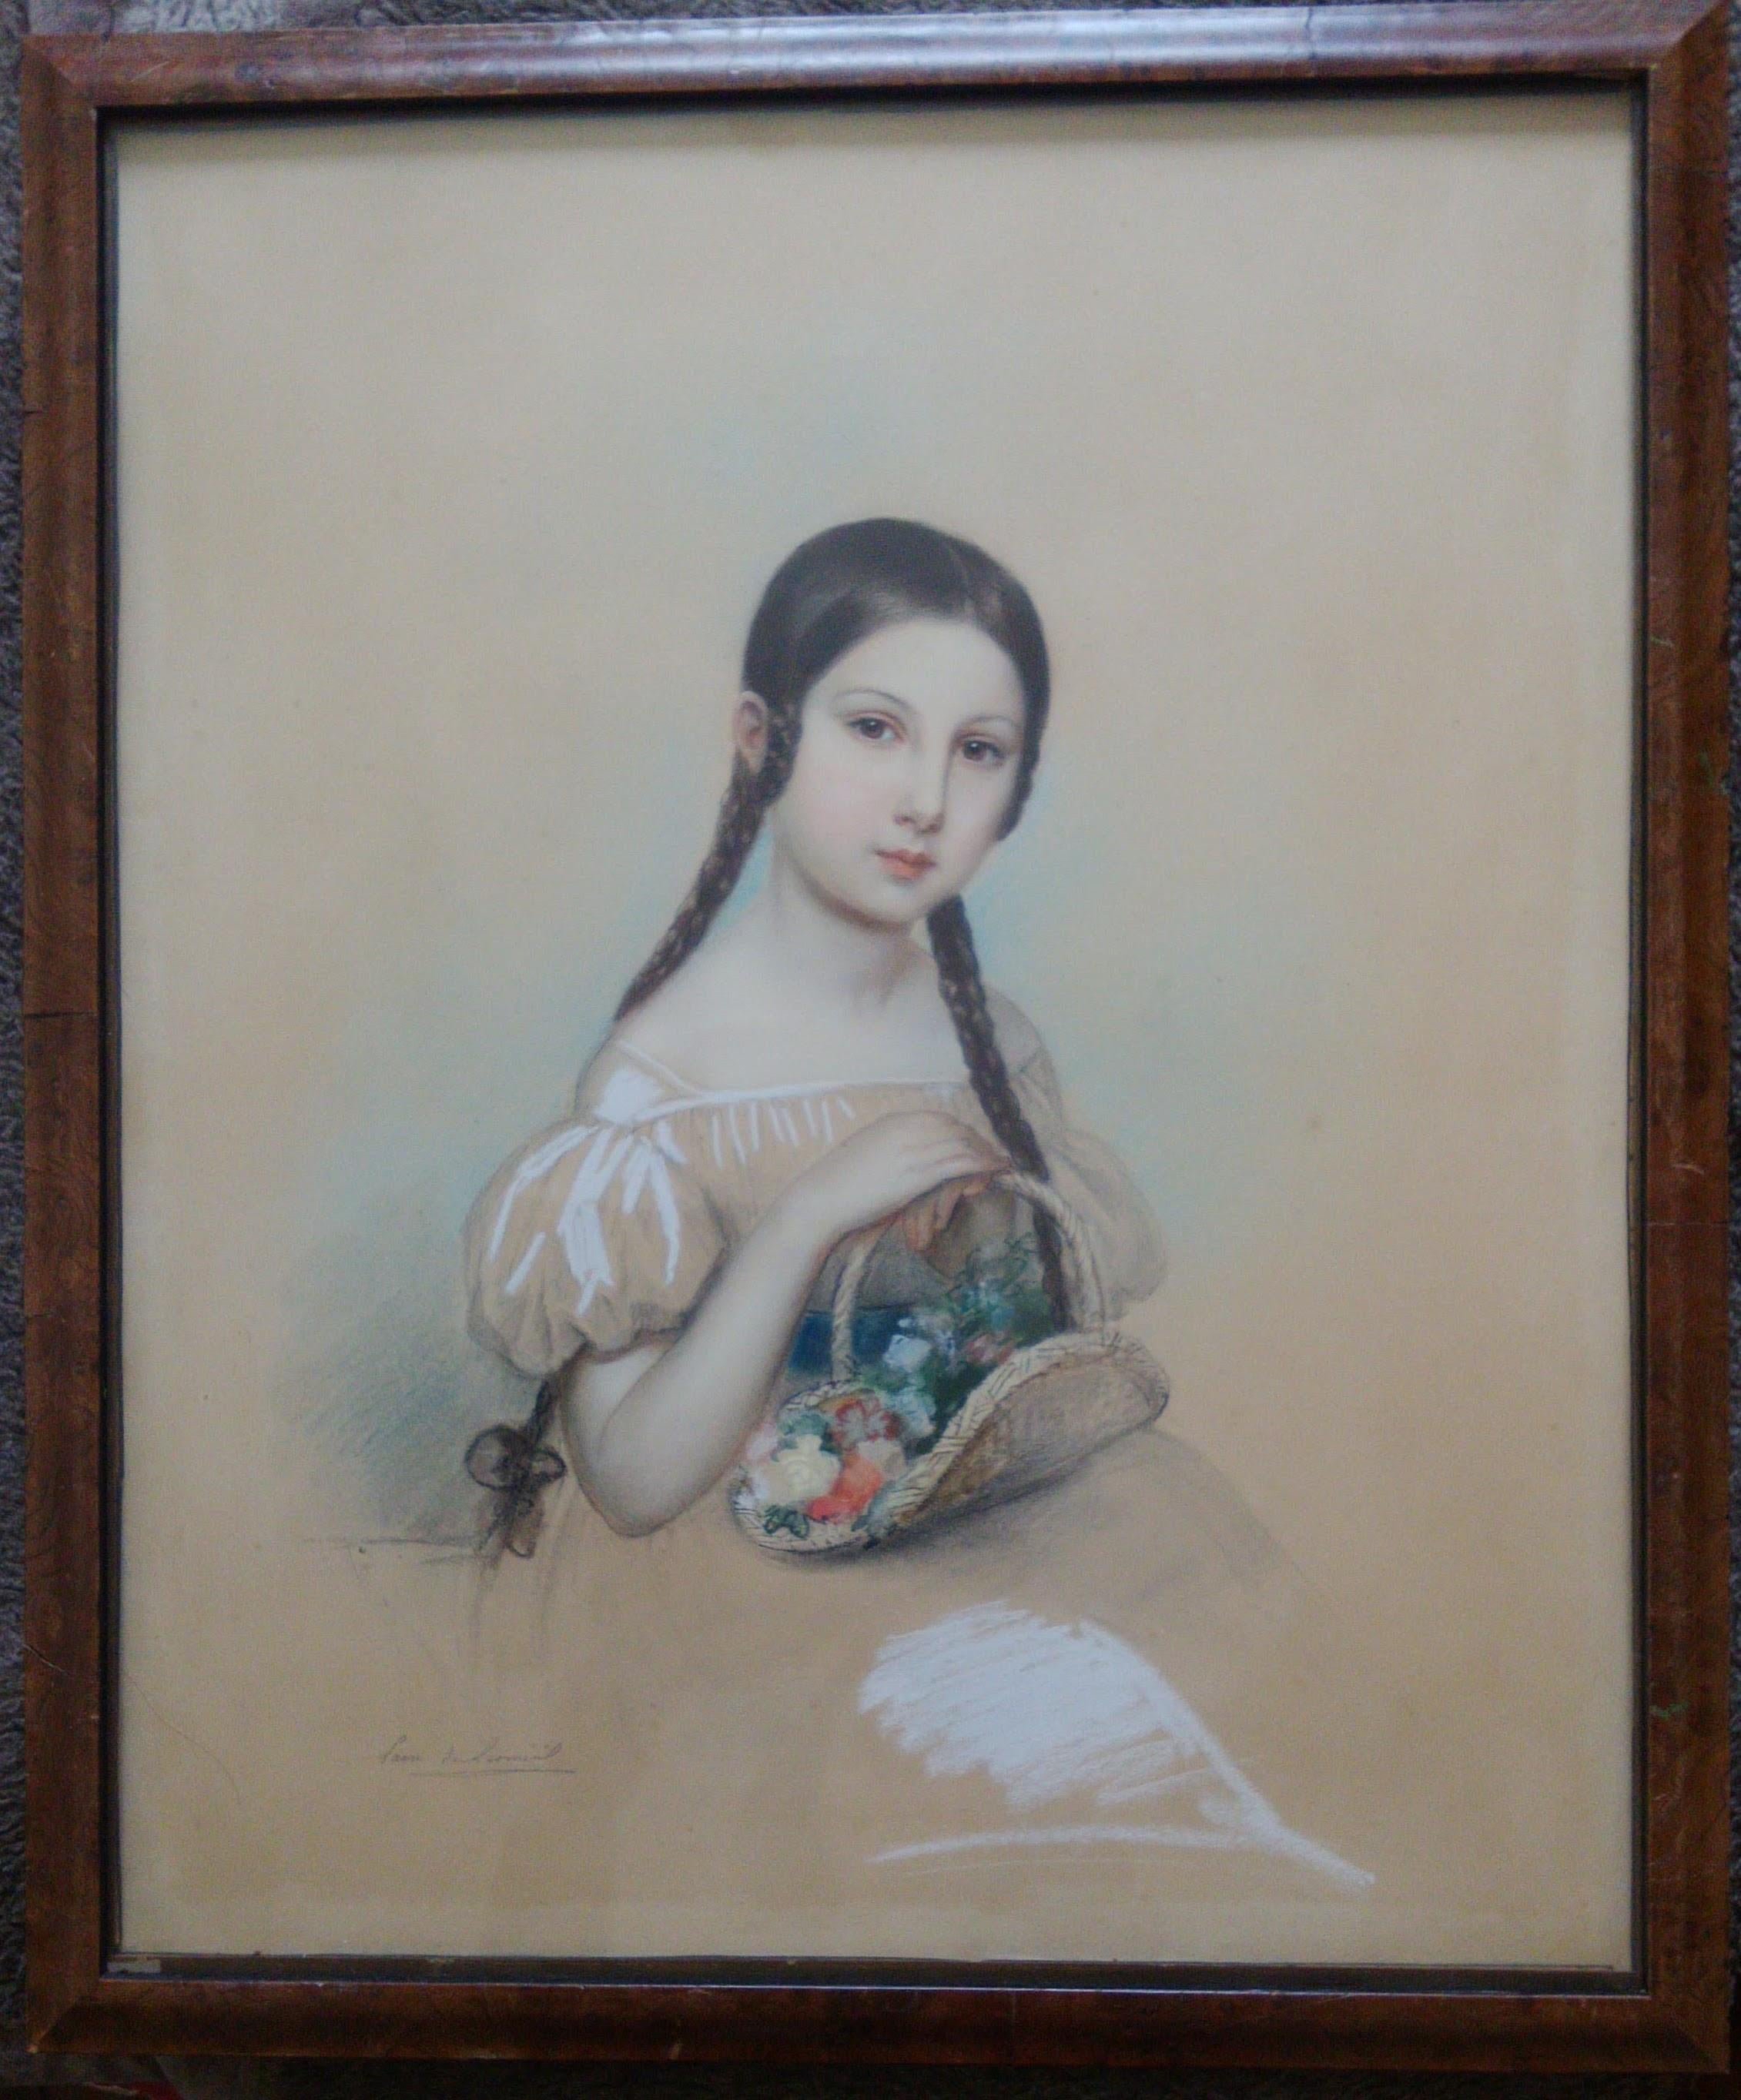 19th Century royal portraitist de Leomenil: Little Girl with Flower Basket - Gray Portrait Painting by Laure Houssaye de Leomenil